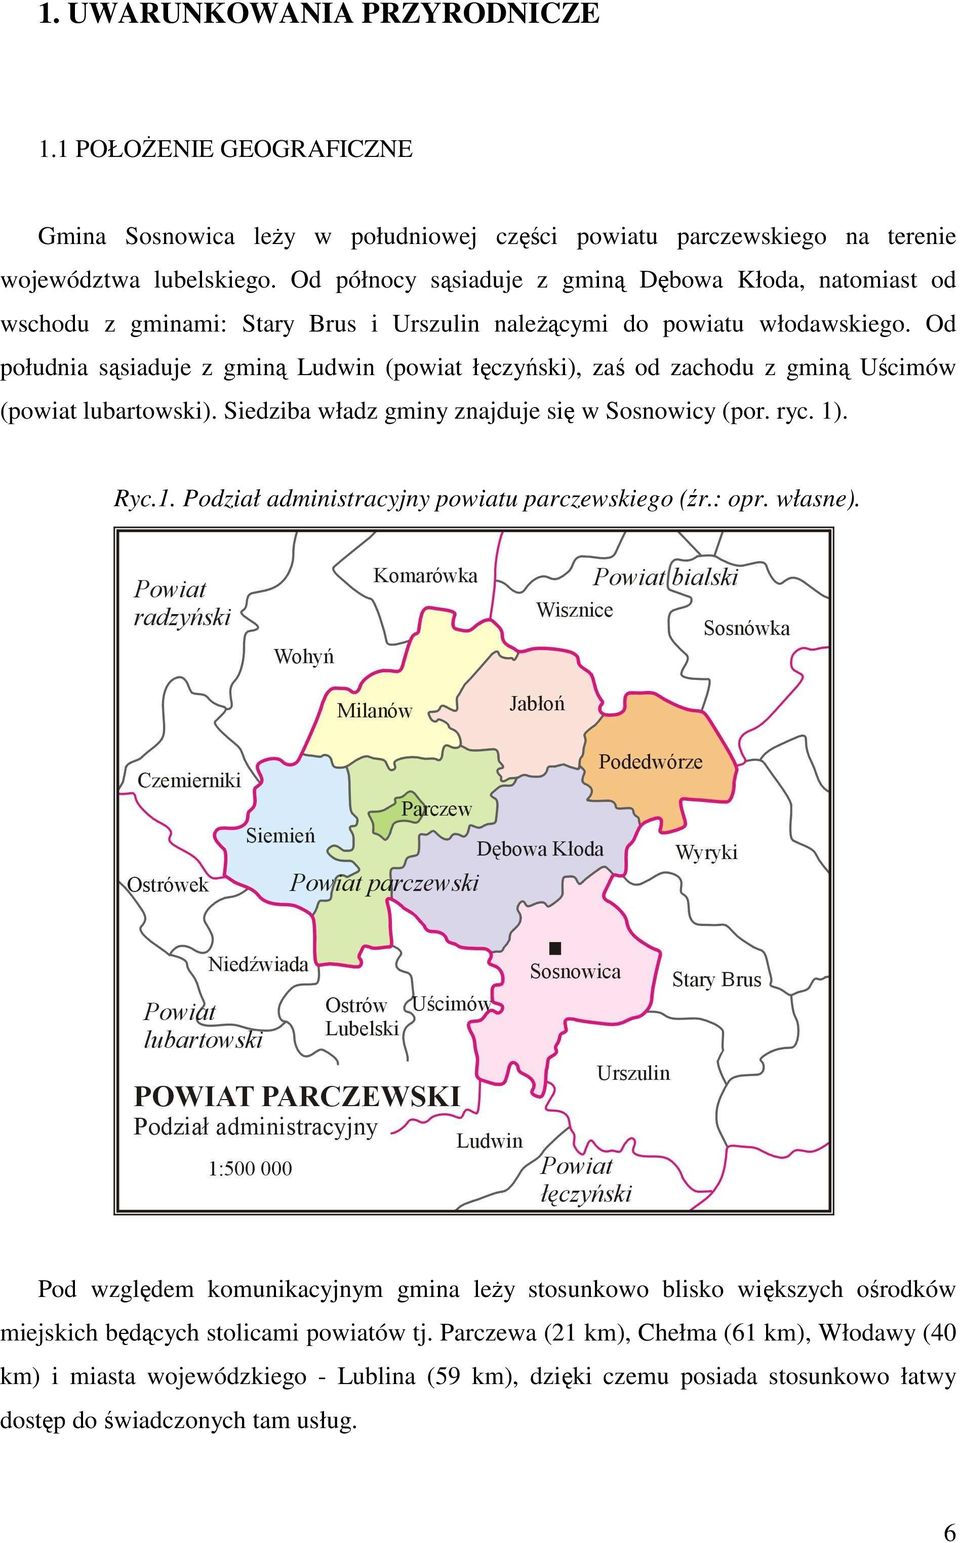 Od południa sąsiaduje z gminą Ludwin (powiat łęczyński), zaś od zachodu z gminą Uścimów (powiat lubartowski). Siedziba władz gminy znajduje się w Sosnowicy (por. ryc. 1)